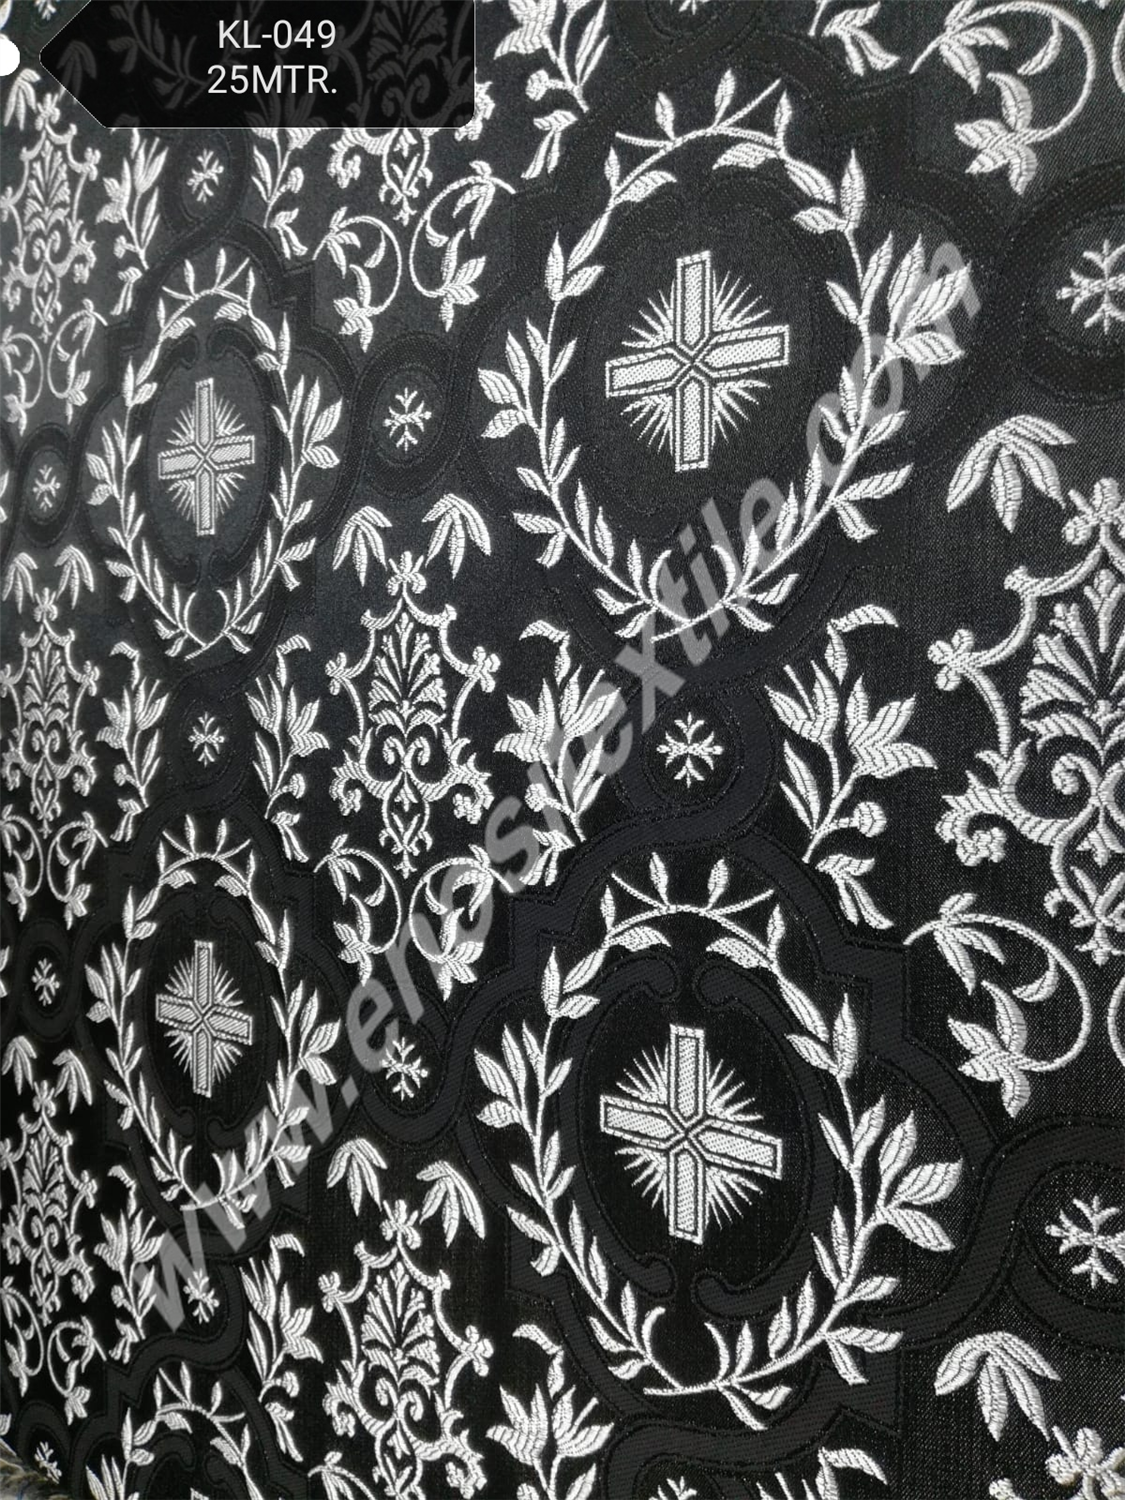 KL-049 Black-Silver Brocade Fabrics